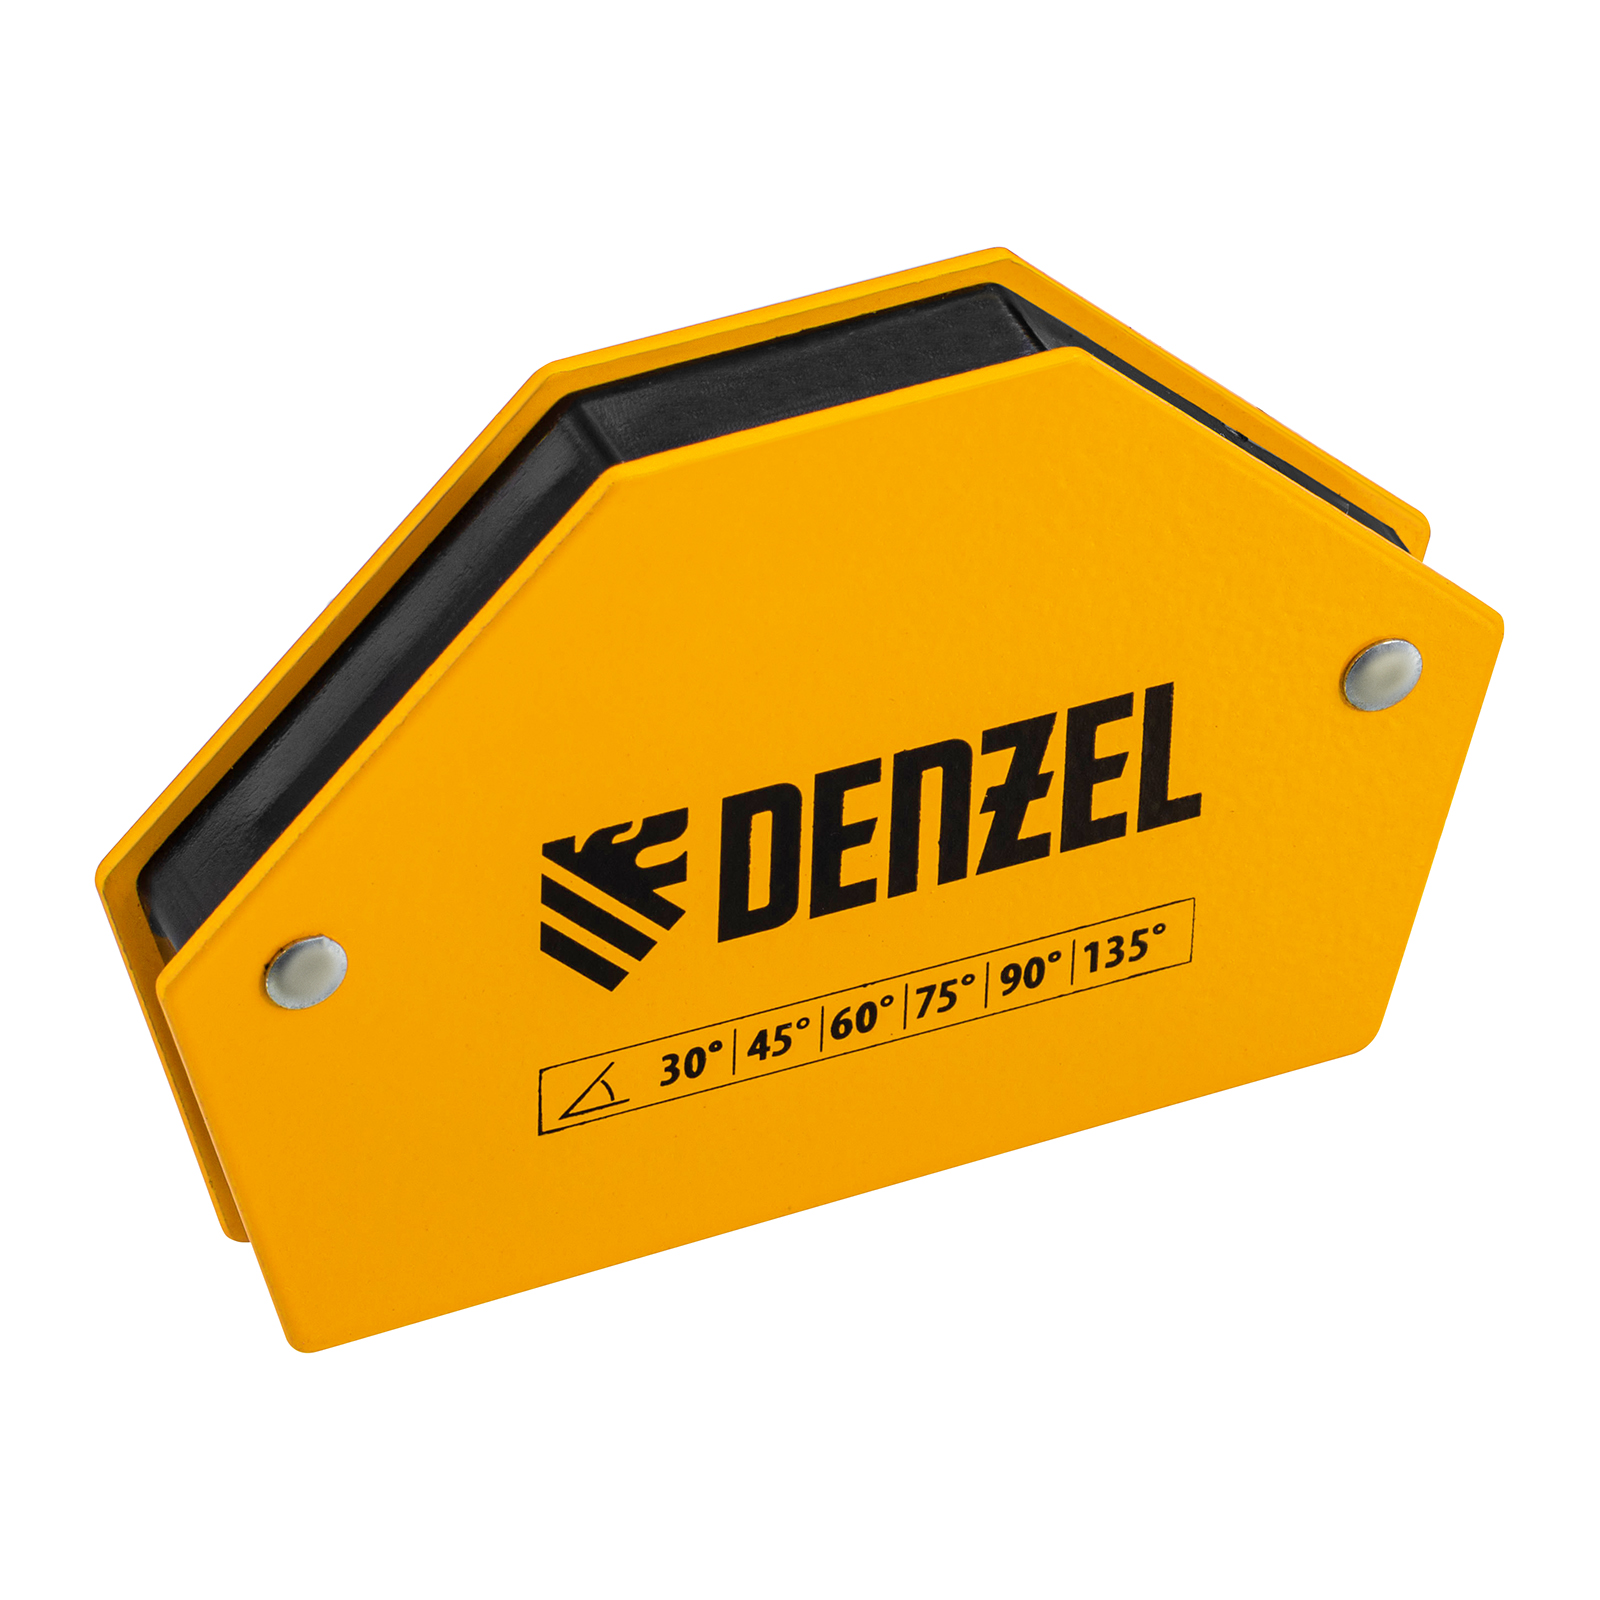 Фиксатор магнитный для сварочных работ DENZEL усилие 25 LB, 30х45х60х75х90х135 град. 97552 фиксатор магнитный для сварочных работ beorol